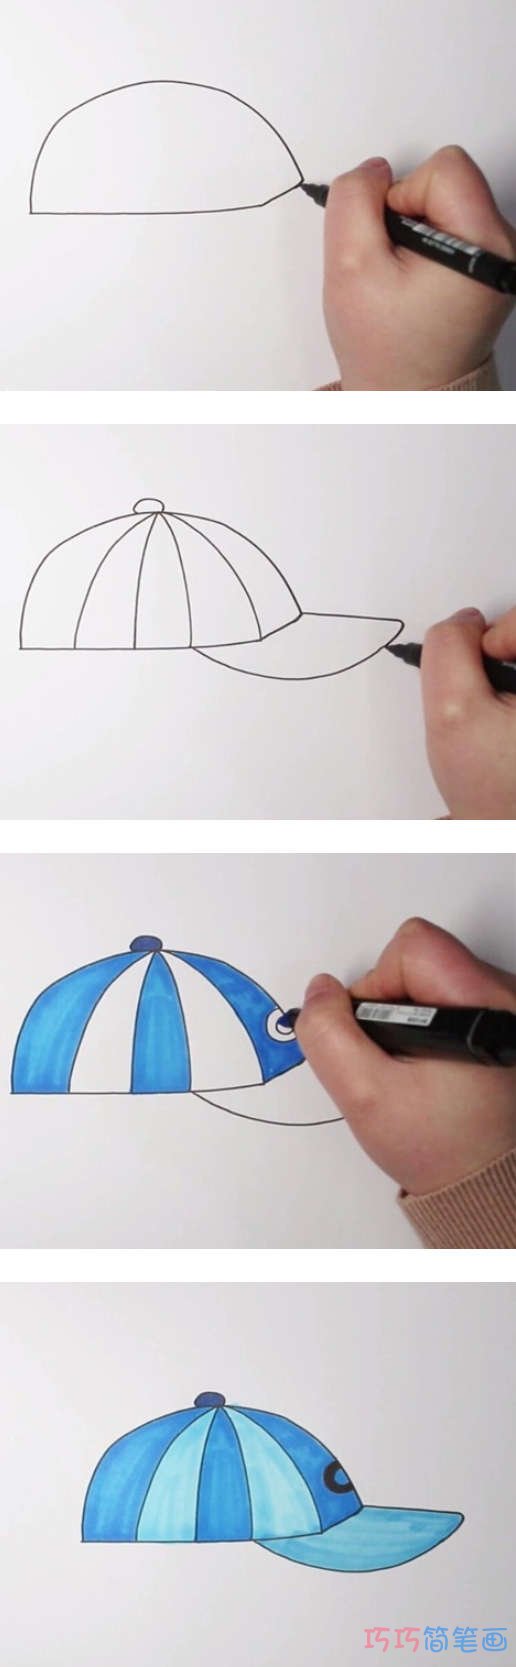 幼儿简笔画鸭舌帽的画法步骤教程涂色